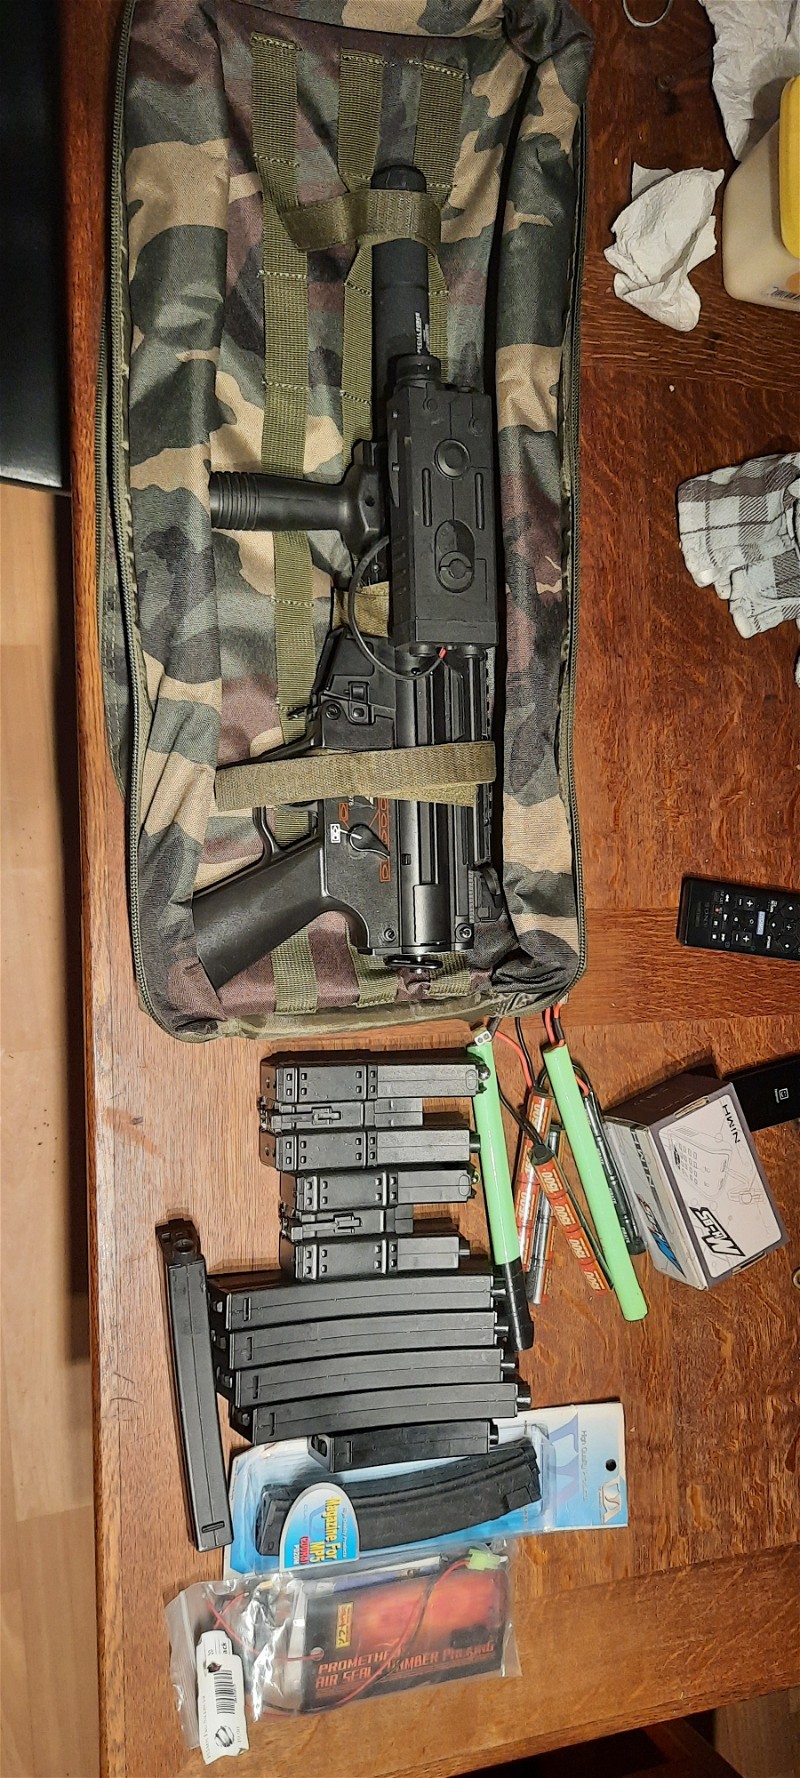 Image 1 for MP5K RAS met upgrades en veel mags